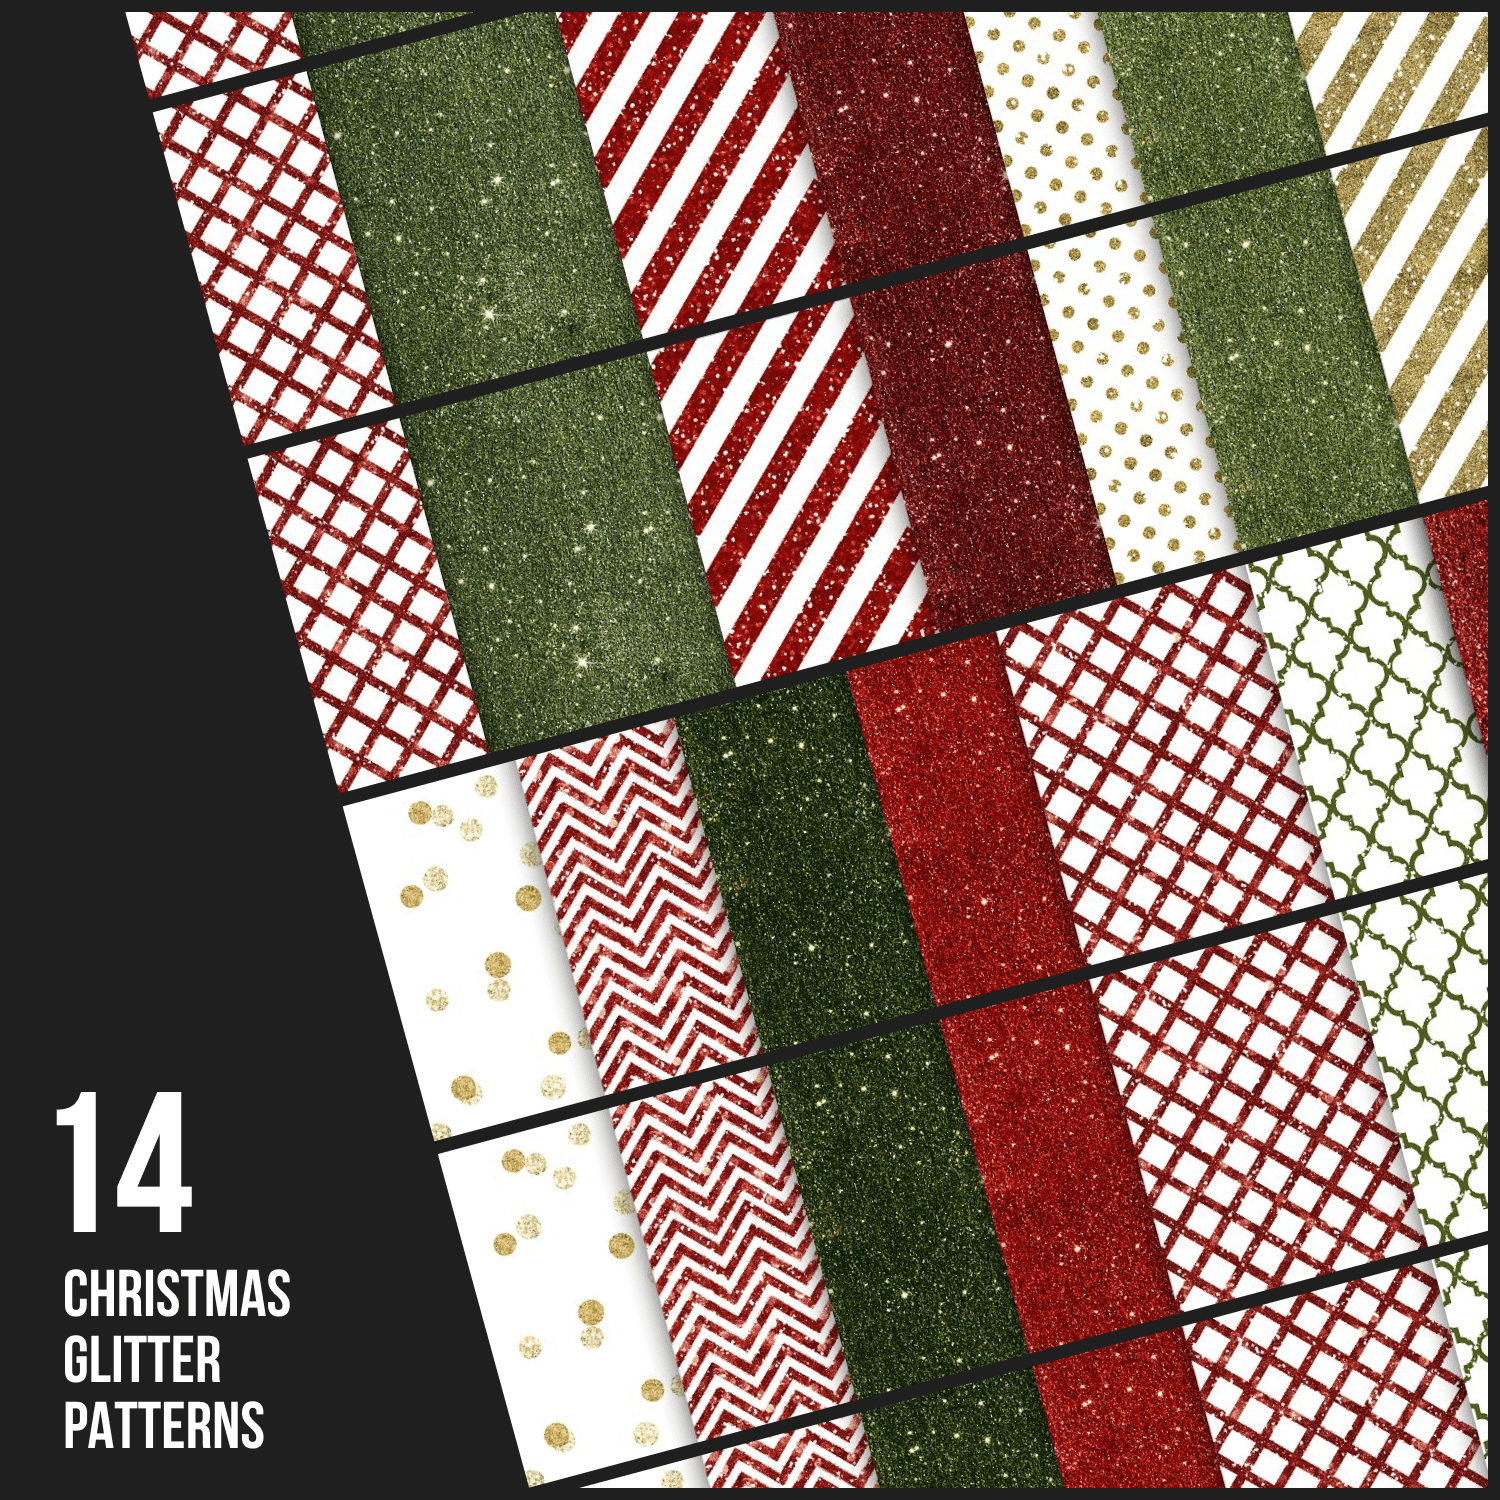 14 Christmas glitter patterns.